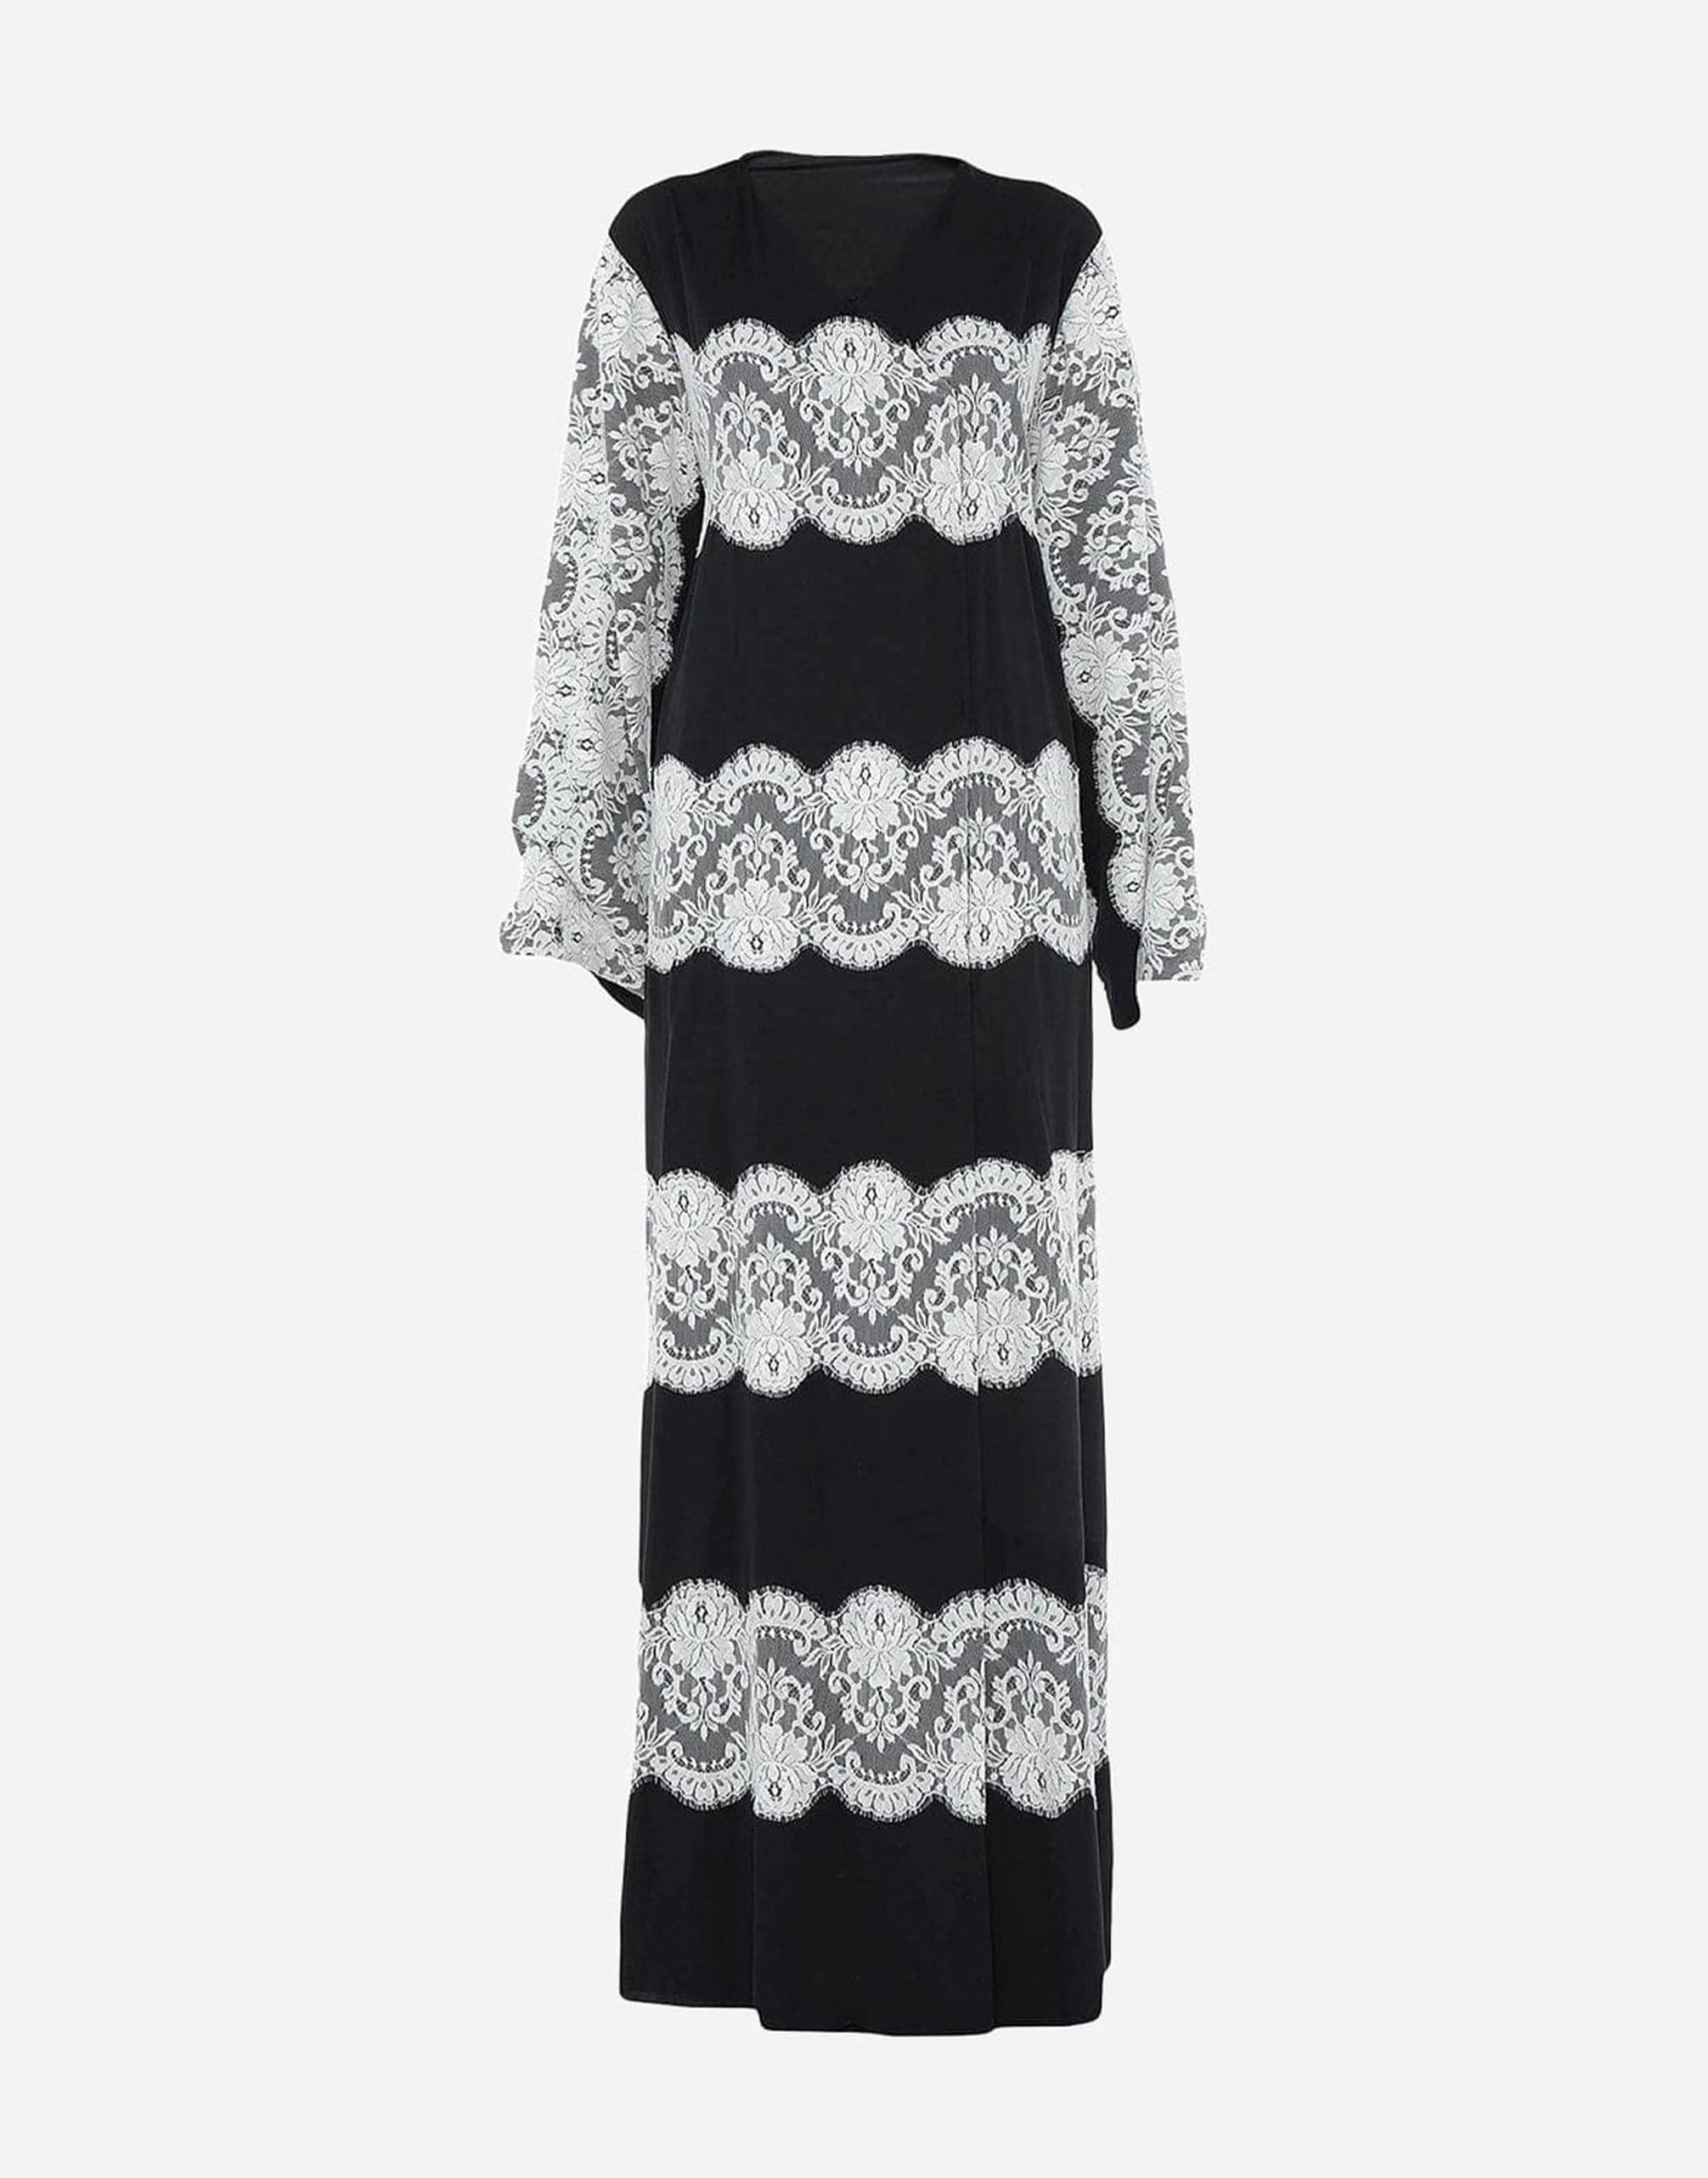 Dolce & Gabbana Lace Kaftan Silk Dress